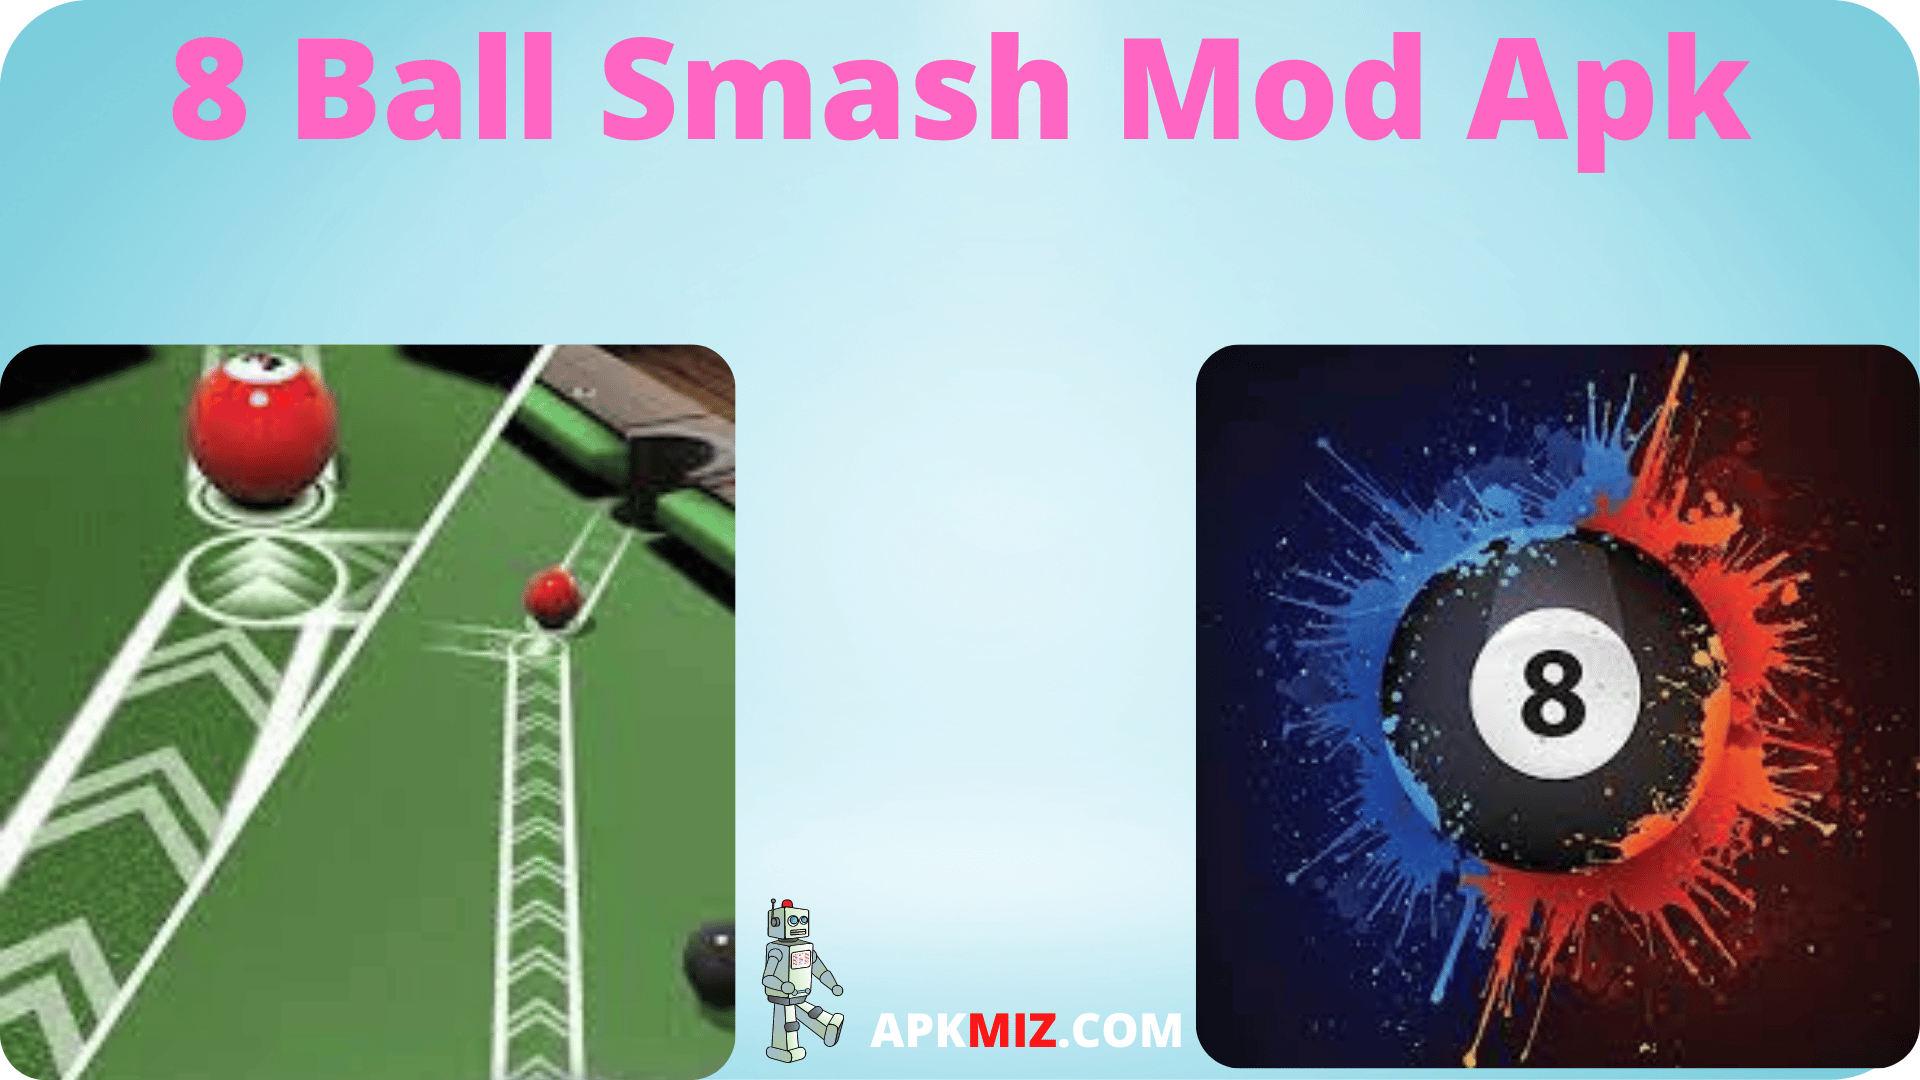 8 Ball Smash Mod Apk